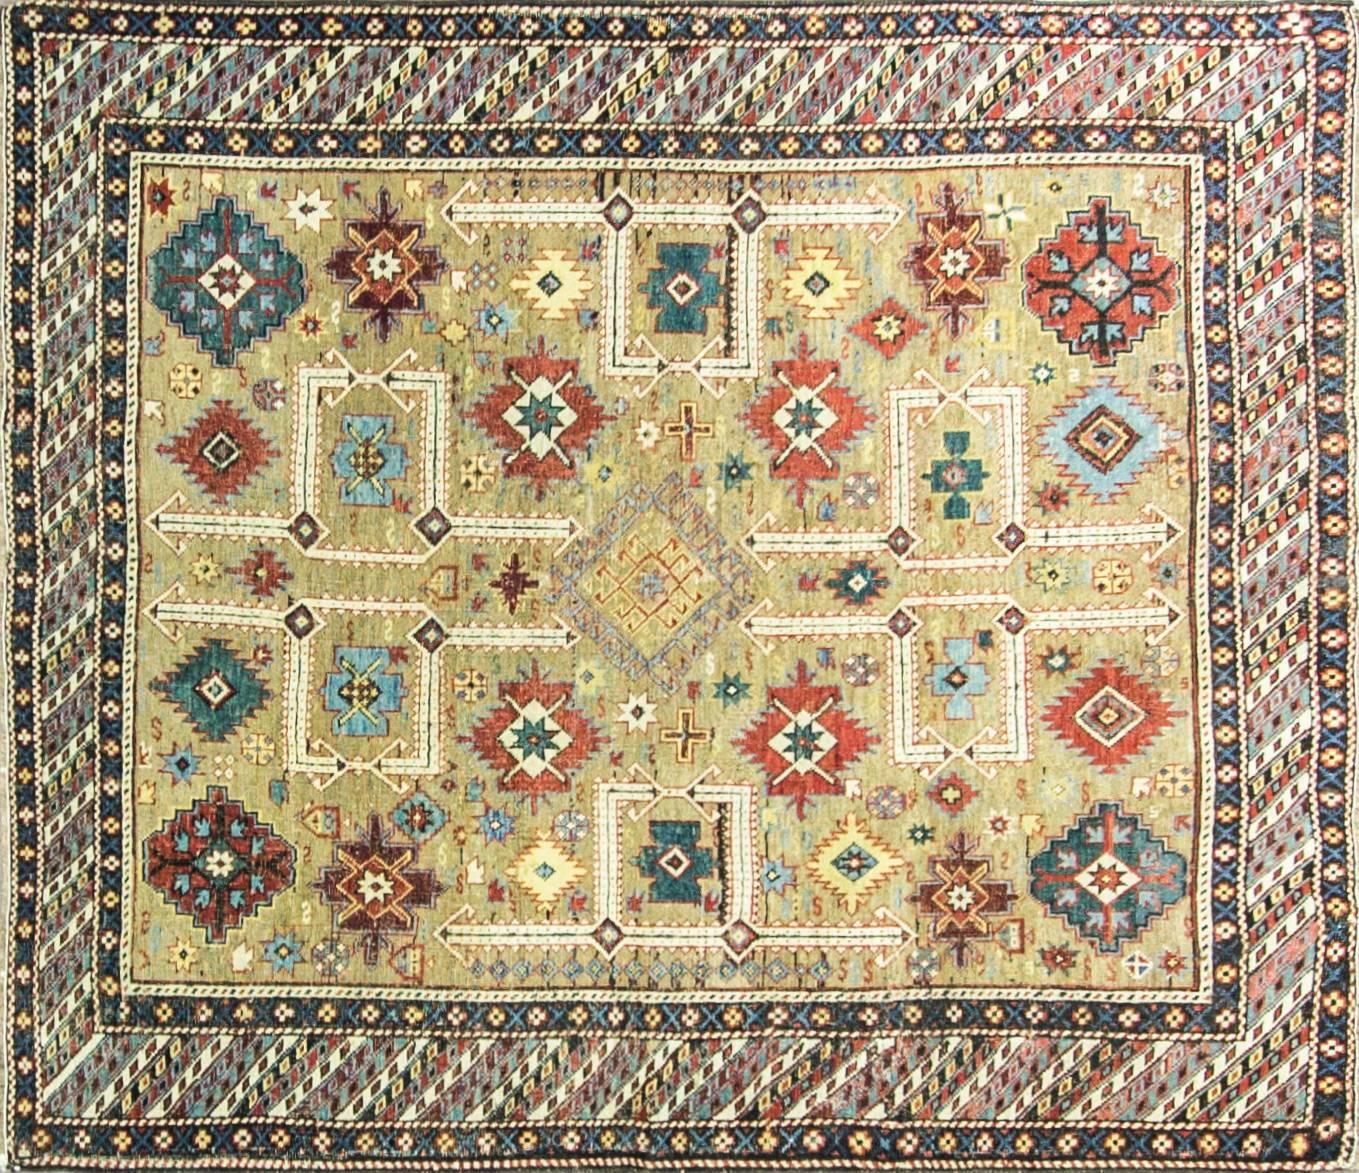 Le khanat historique ou district administratif de Shirvan a produit de nombreux tapis anciens très décoratifs qui présentent une formalité et une complexité stylistique que l'on retrouve dans peu de tapis du Caucase. La profondeur des couleurs, la